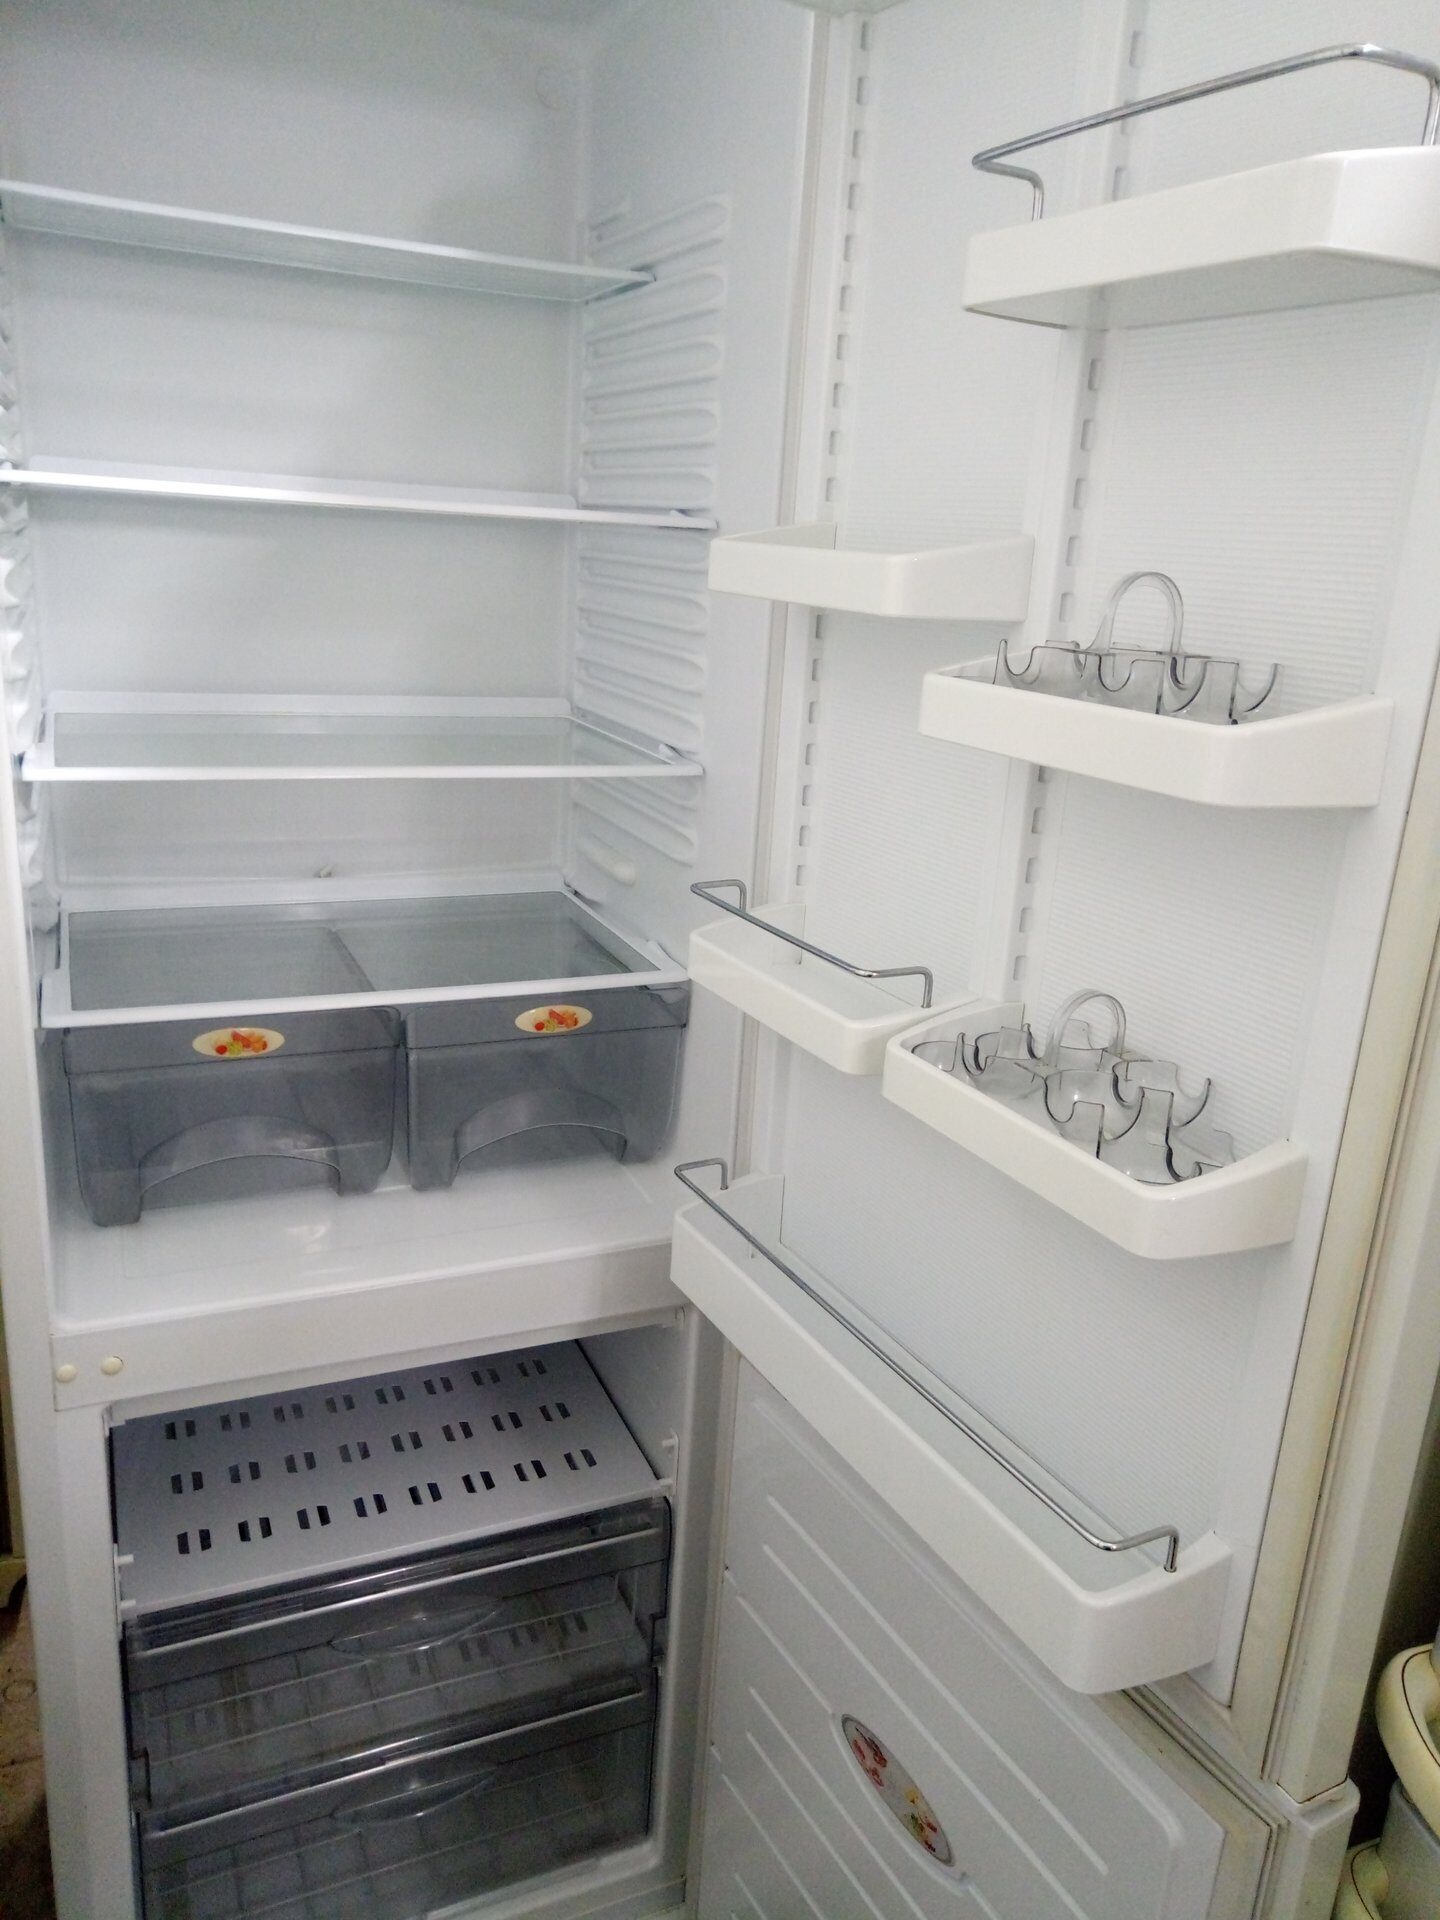 Где Можно Купить Холодильники Атлант